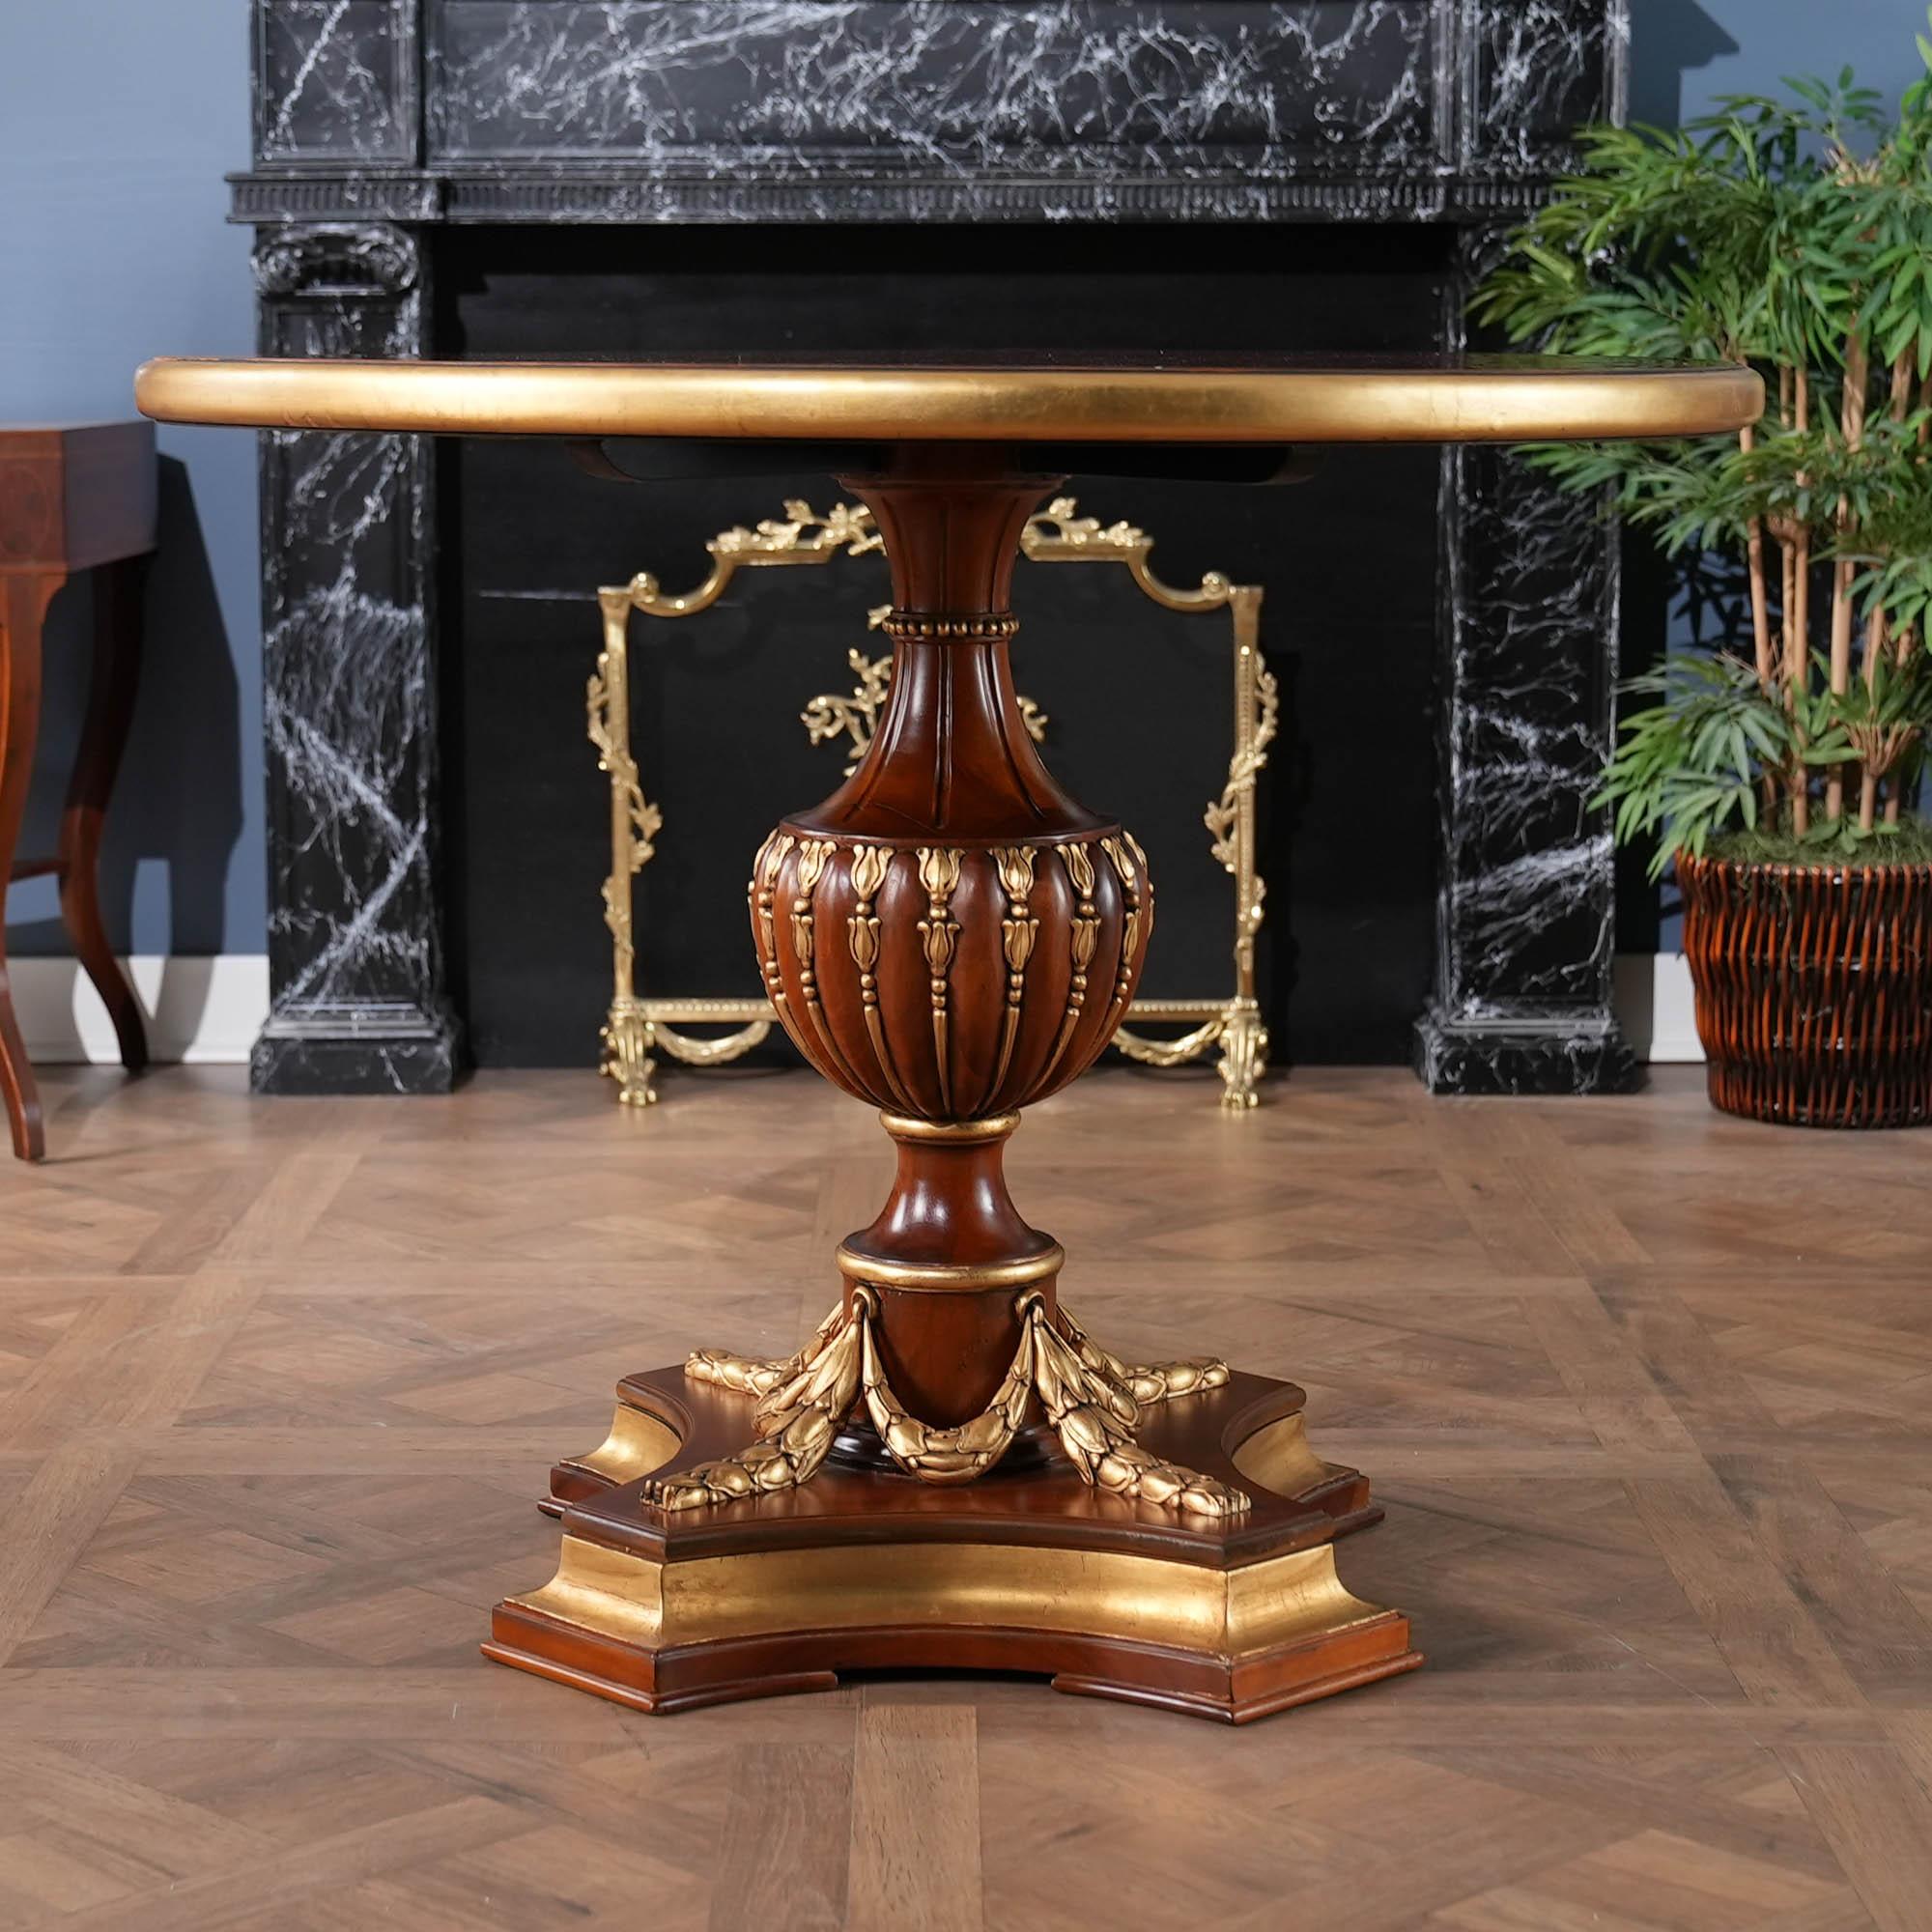 Une magnifique table centrale en bois d'ébène de haute qualité  de Niagara Furniture avec beaucoup de présence pour illuminer n'importe quelle pièce. Le plateau cannelé et ronceux, la base en acajou massif sculptée à la main et les accents en